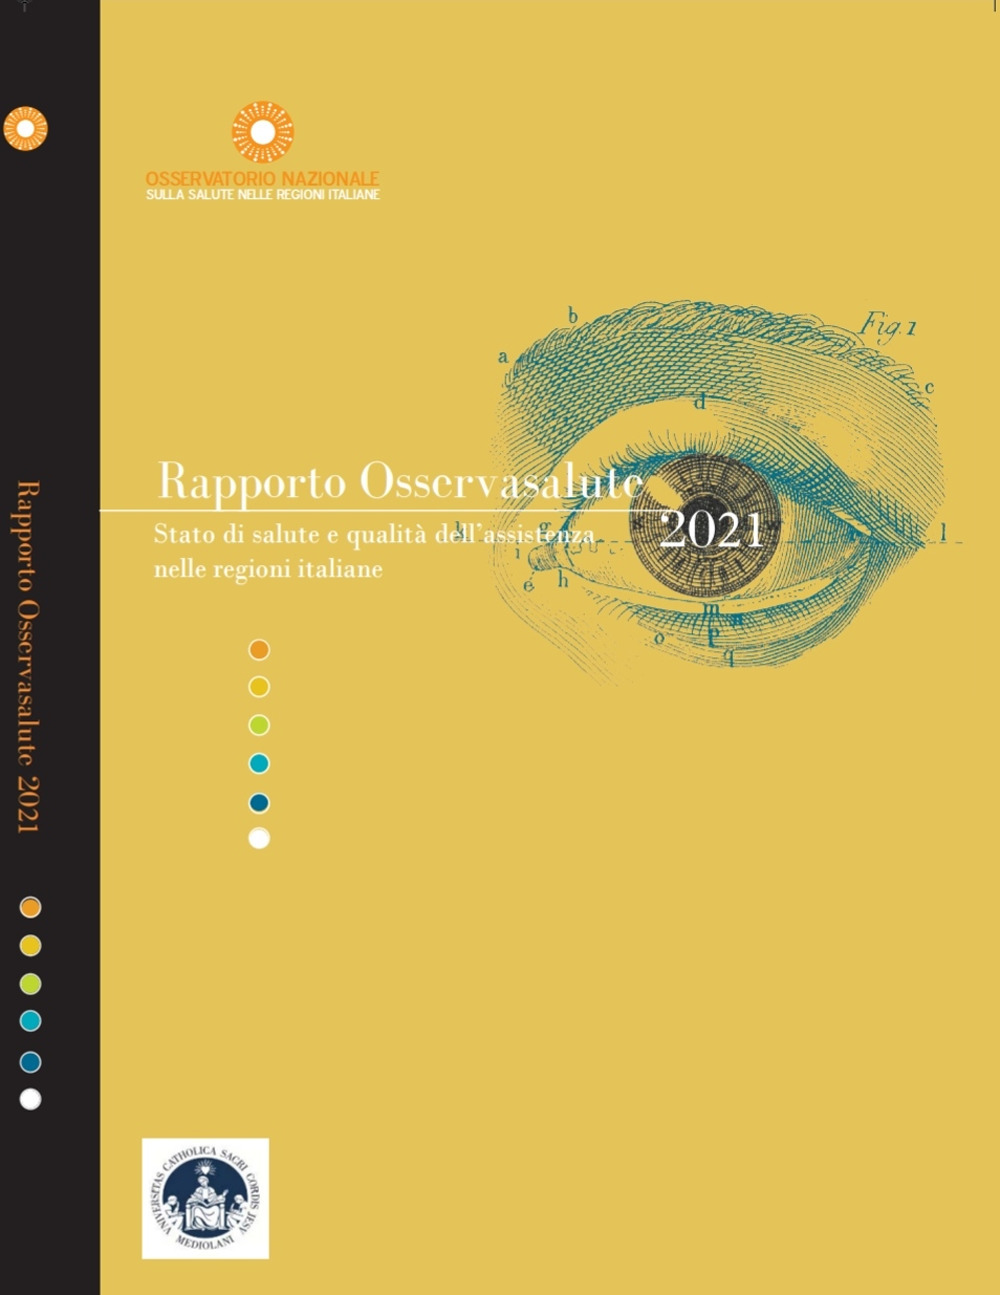 Rapporto Osservasalute 2021. Stato di salute e qualità dell'assistenza nelle regioni italiane